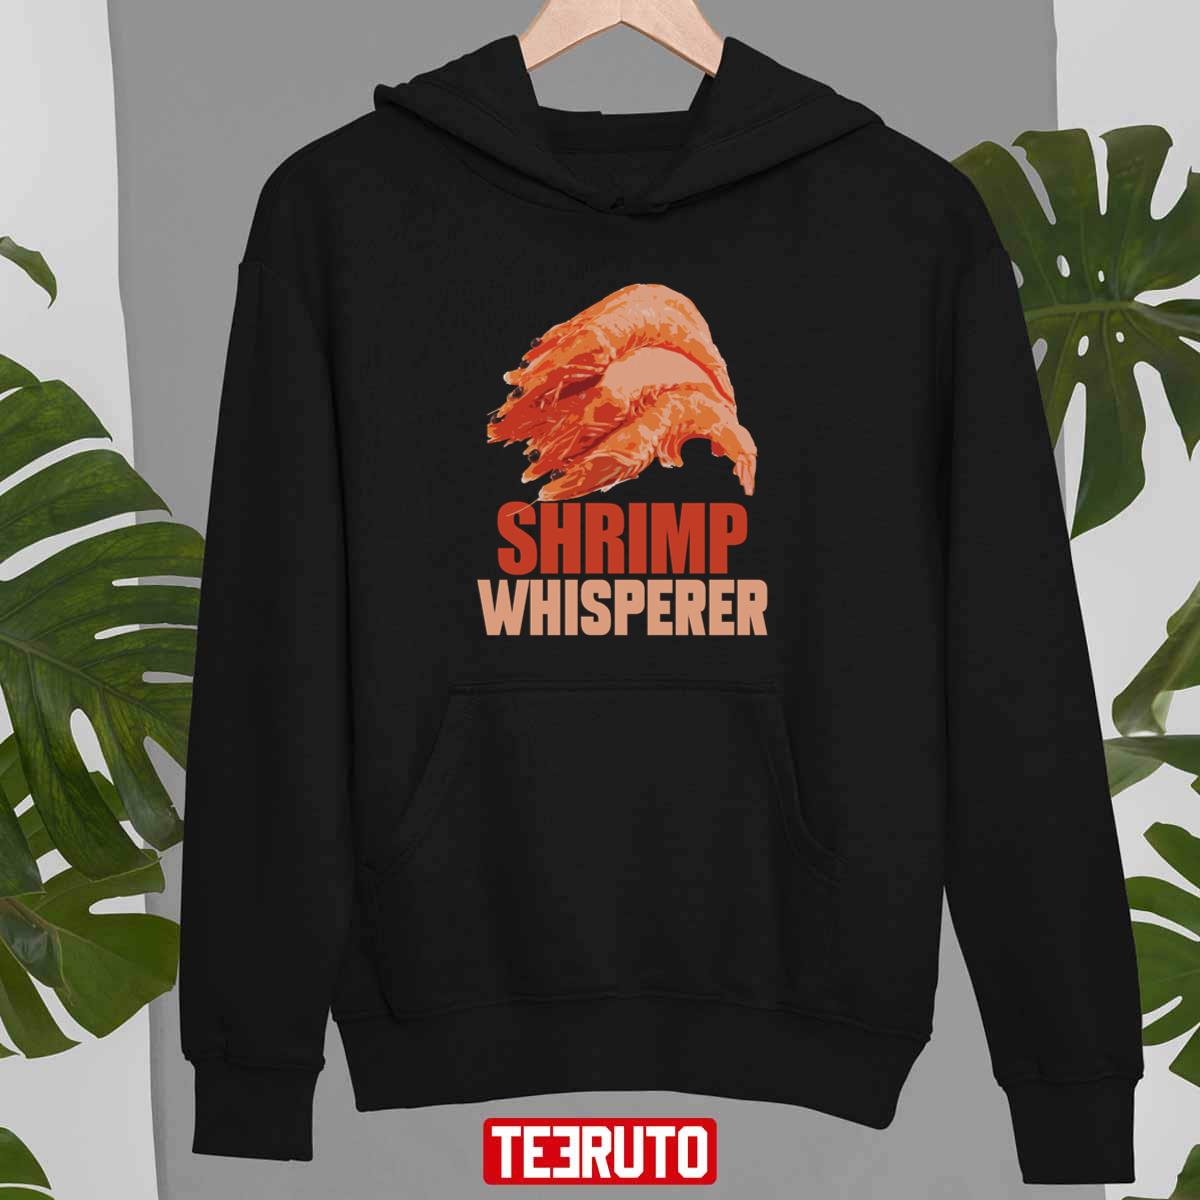 Shrimp Whisperer Unisex T-Shirt